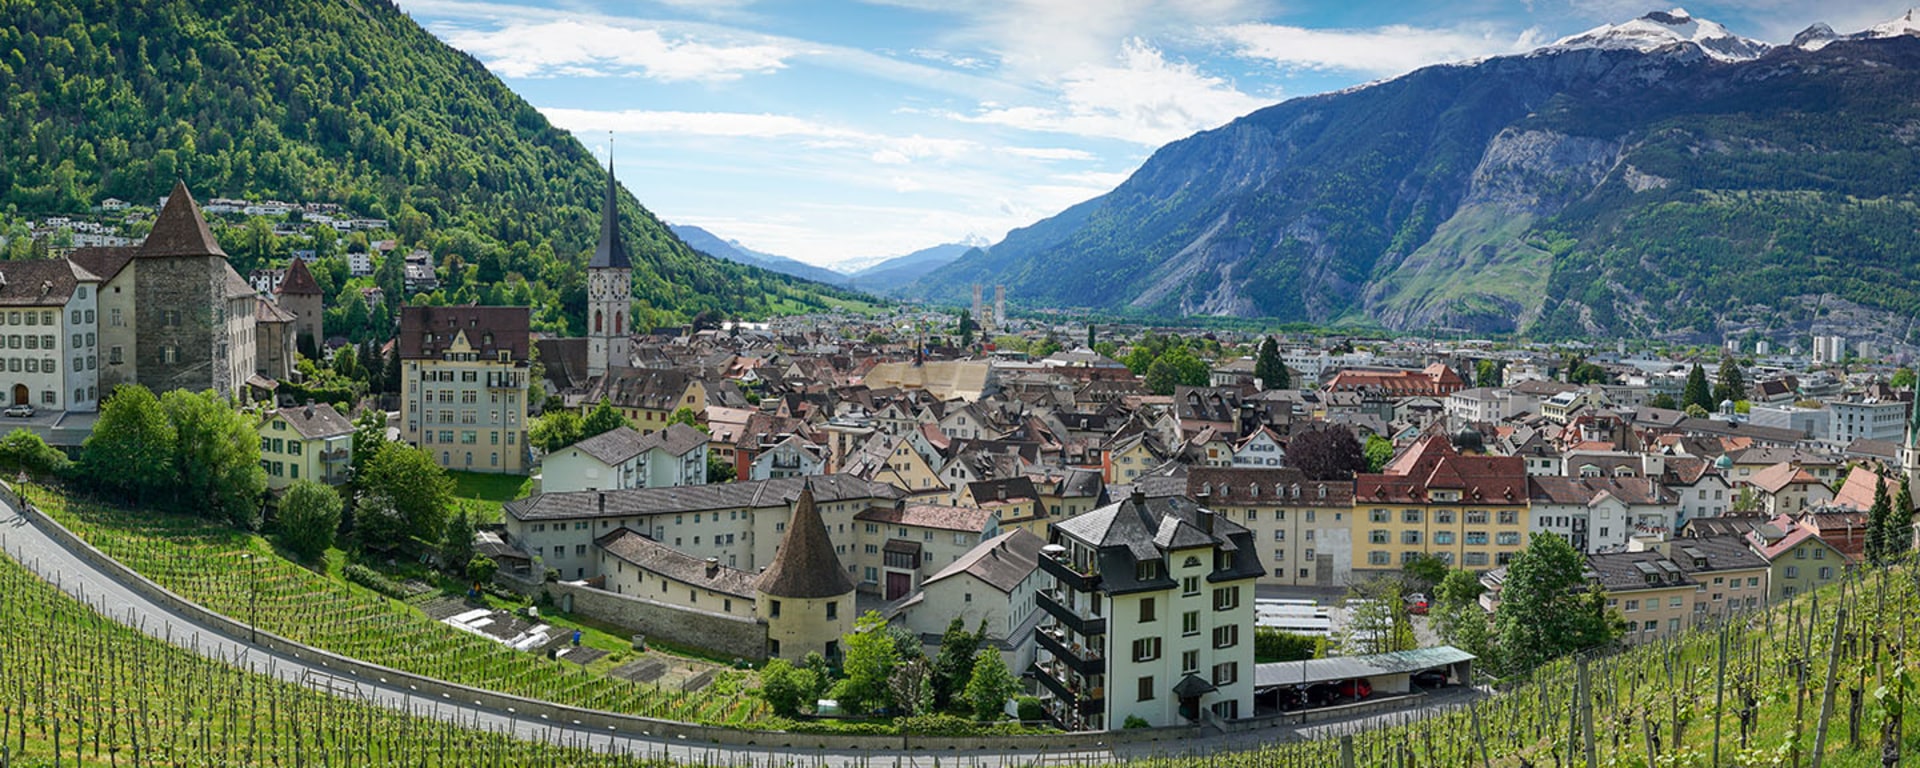 Vontobel in Chur - View over the city of Chur